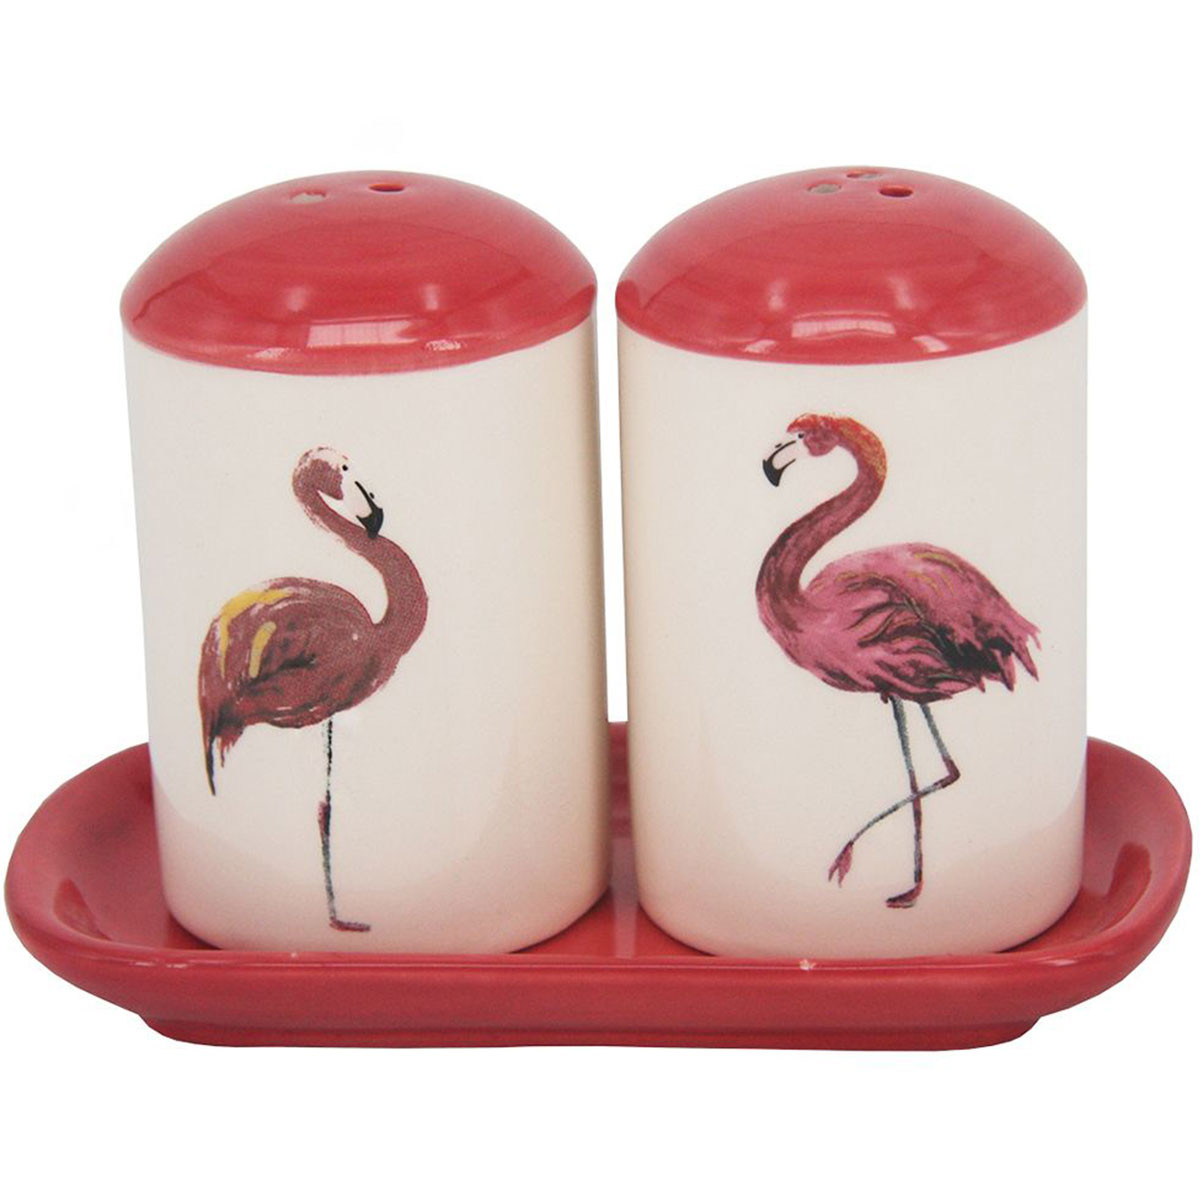  Jogo Saleiro e Pimenteiro Flamingo Cerâmica 